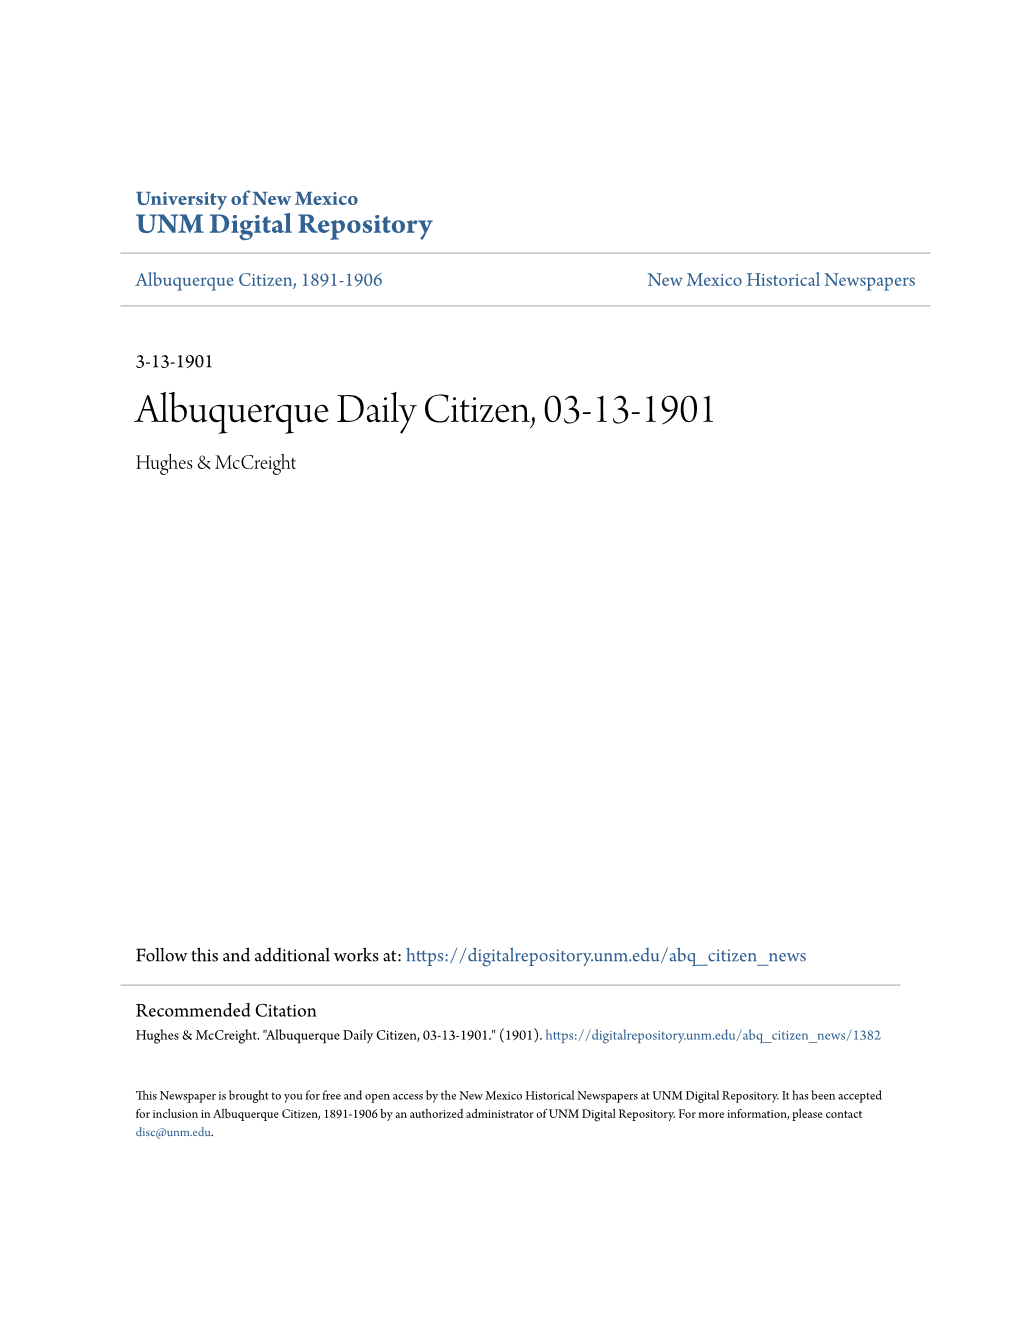 Albuquerque Daily Citizen, 03-13-1901 Hughes & Mccreight